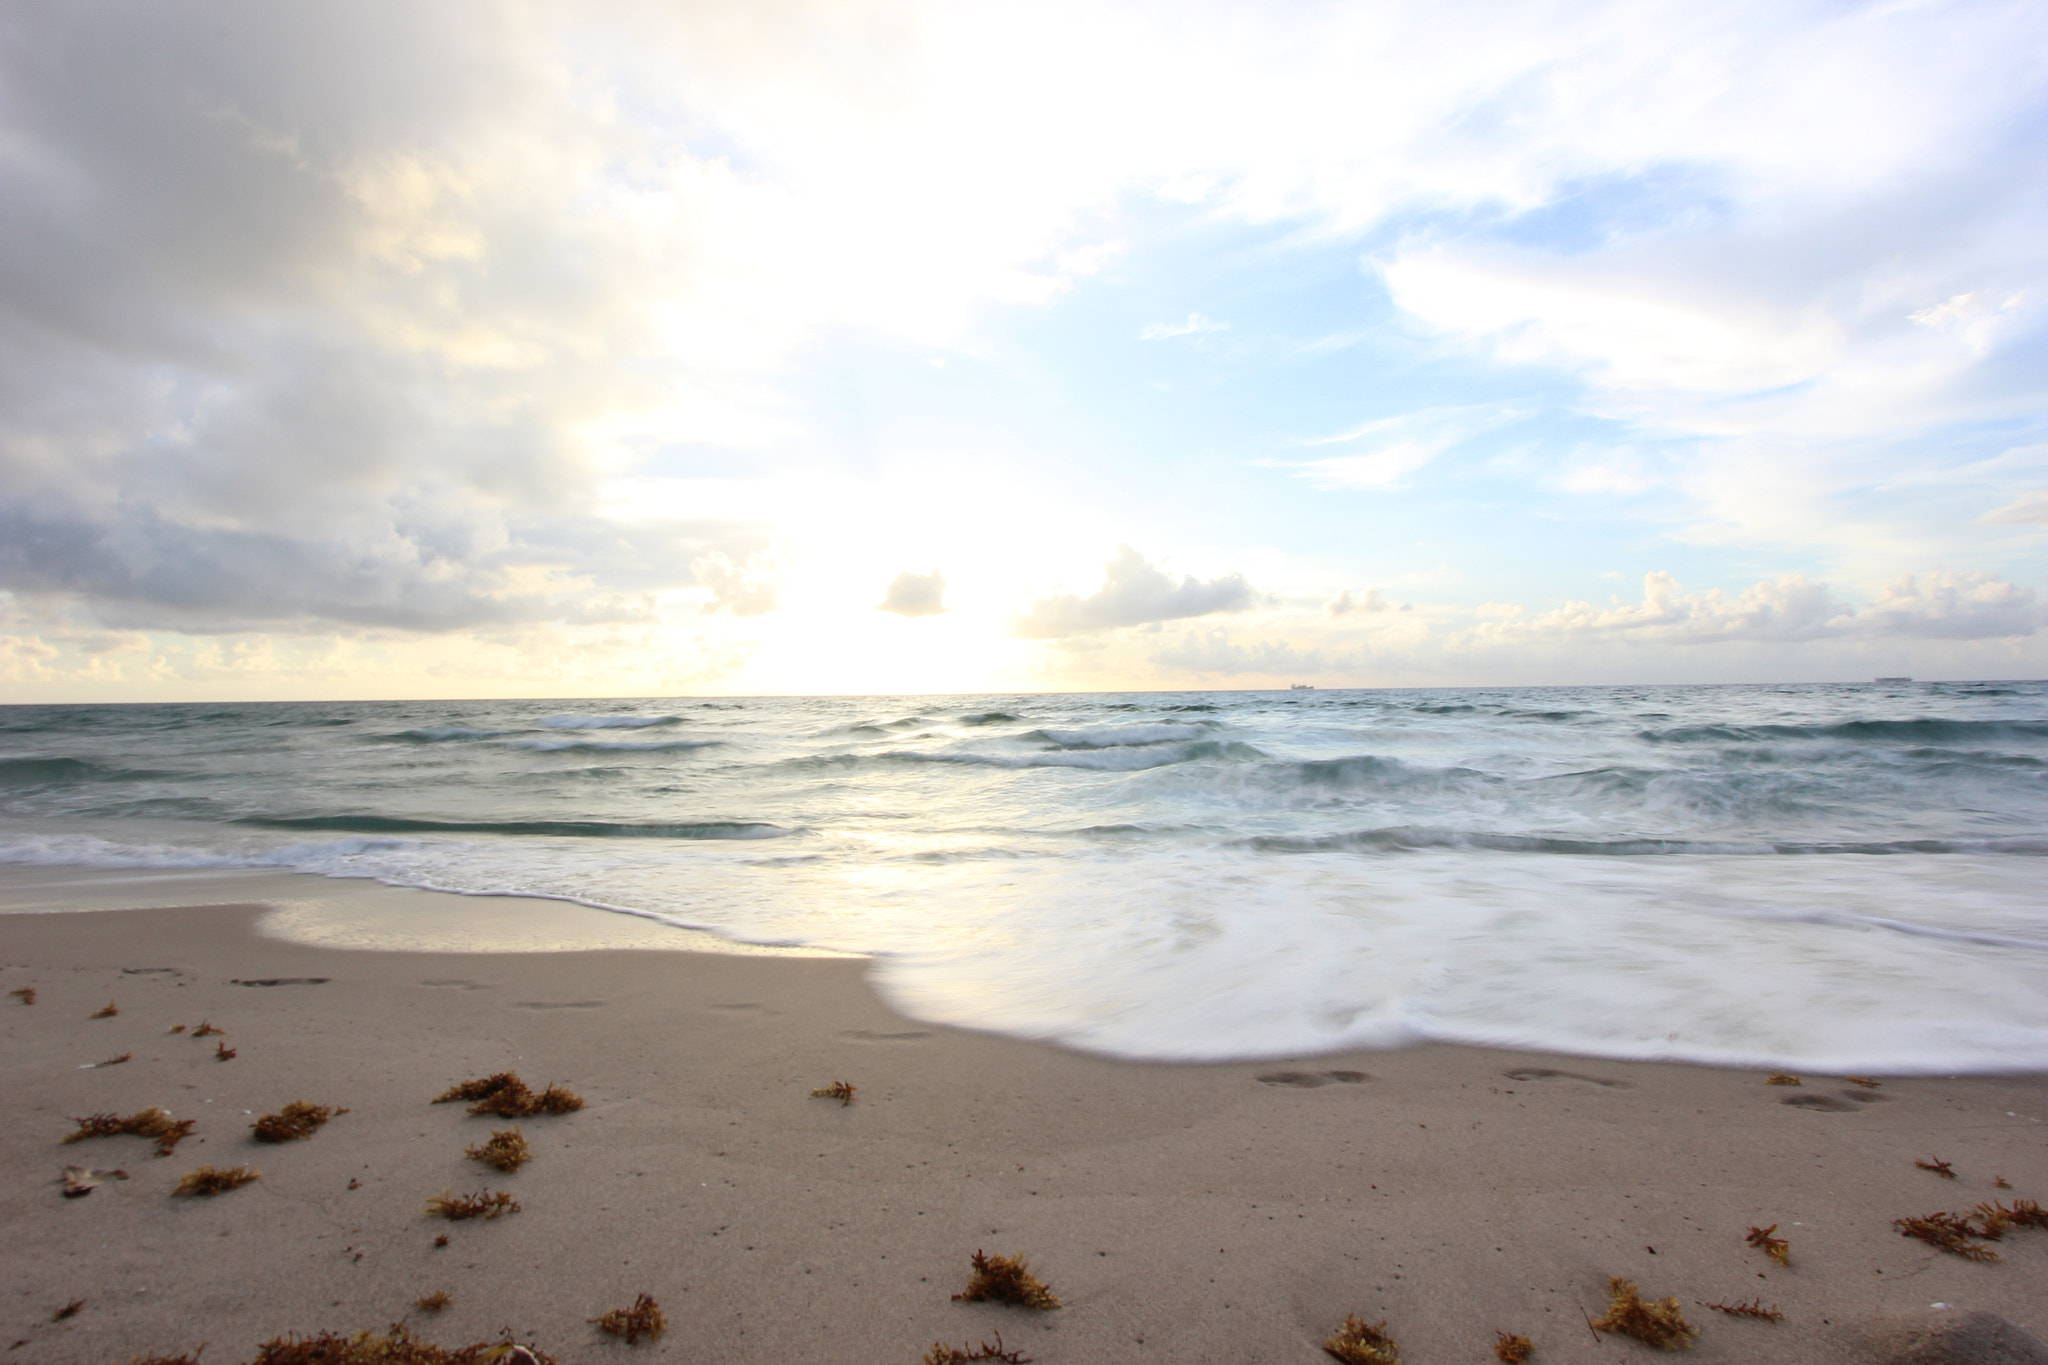 Canon EOS 600D (Rebel EOS T3i / EOS Kiss X5) sample photo. Singer island beach blur photography